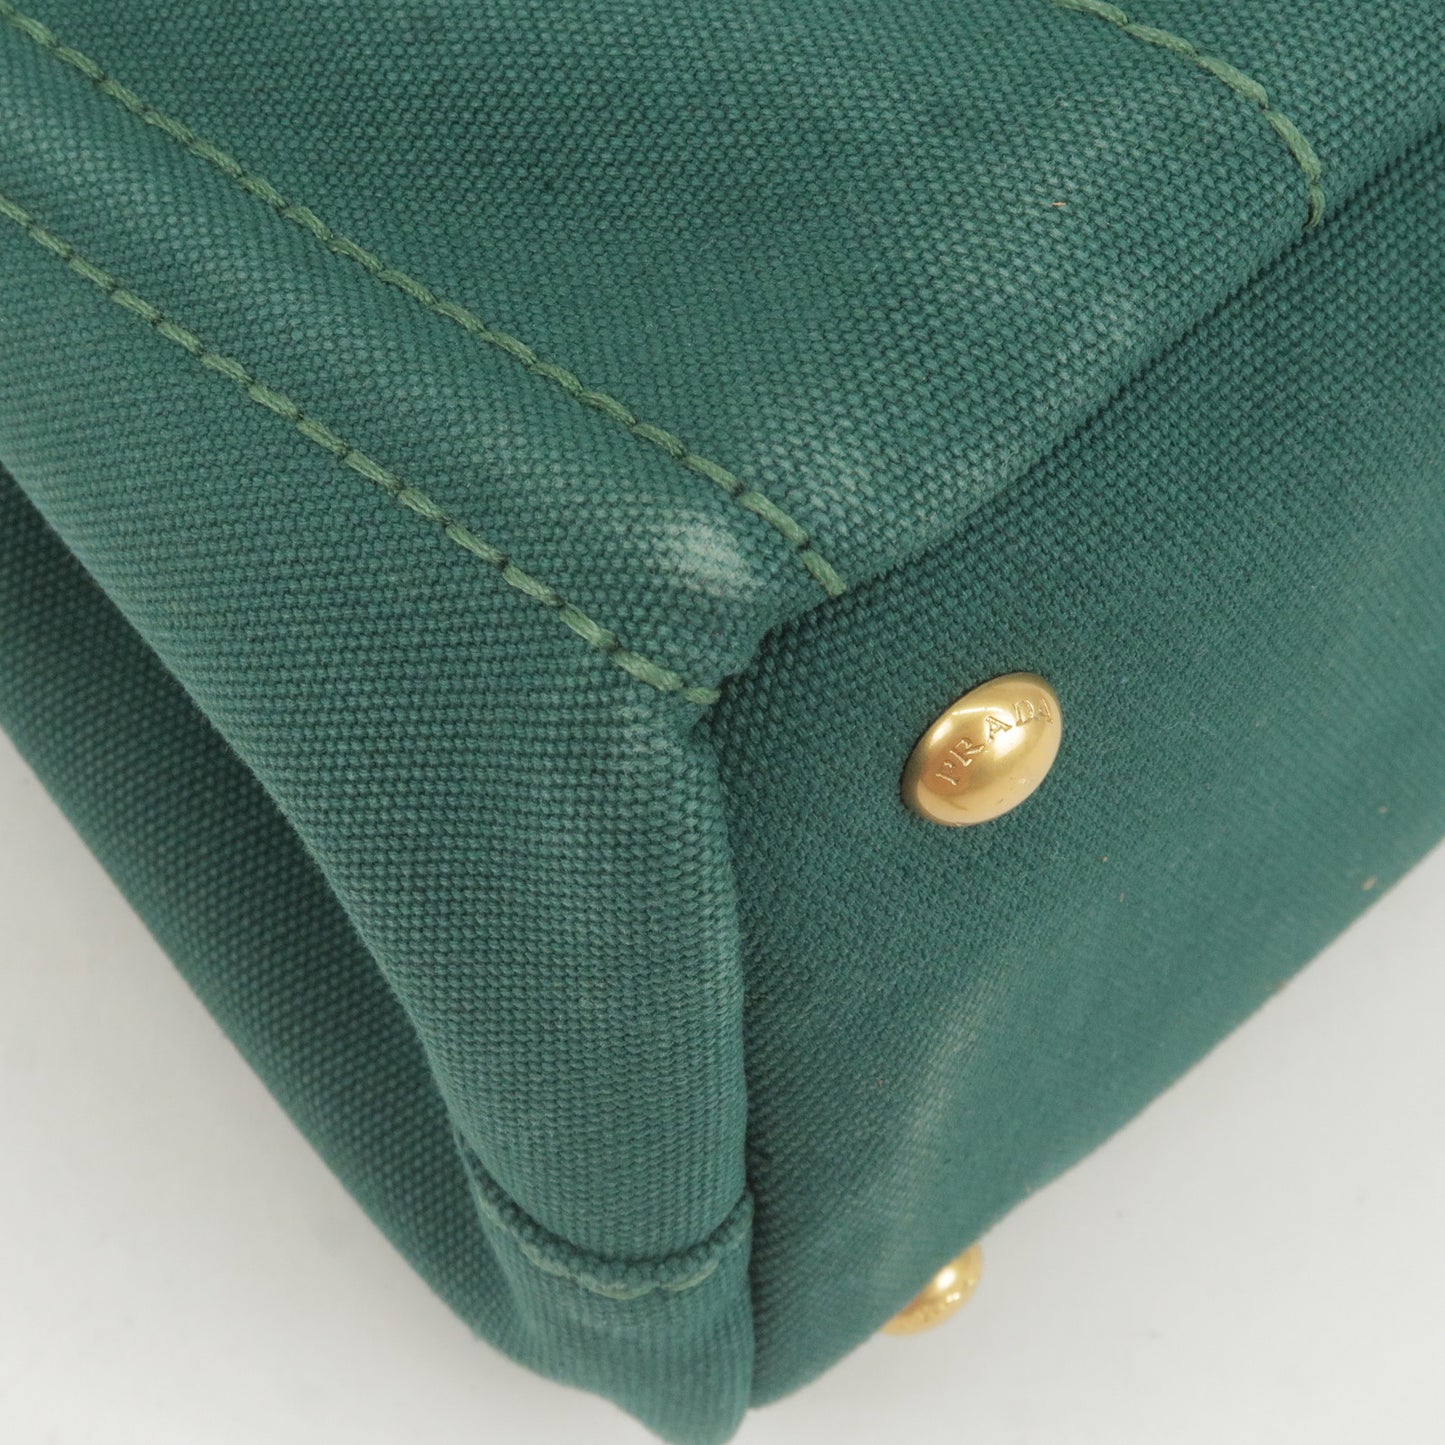 PRADA Canapa Mini Canvas 2Way Bag Shoulder Bag Green B2439G